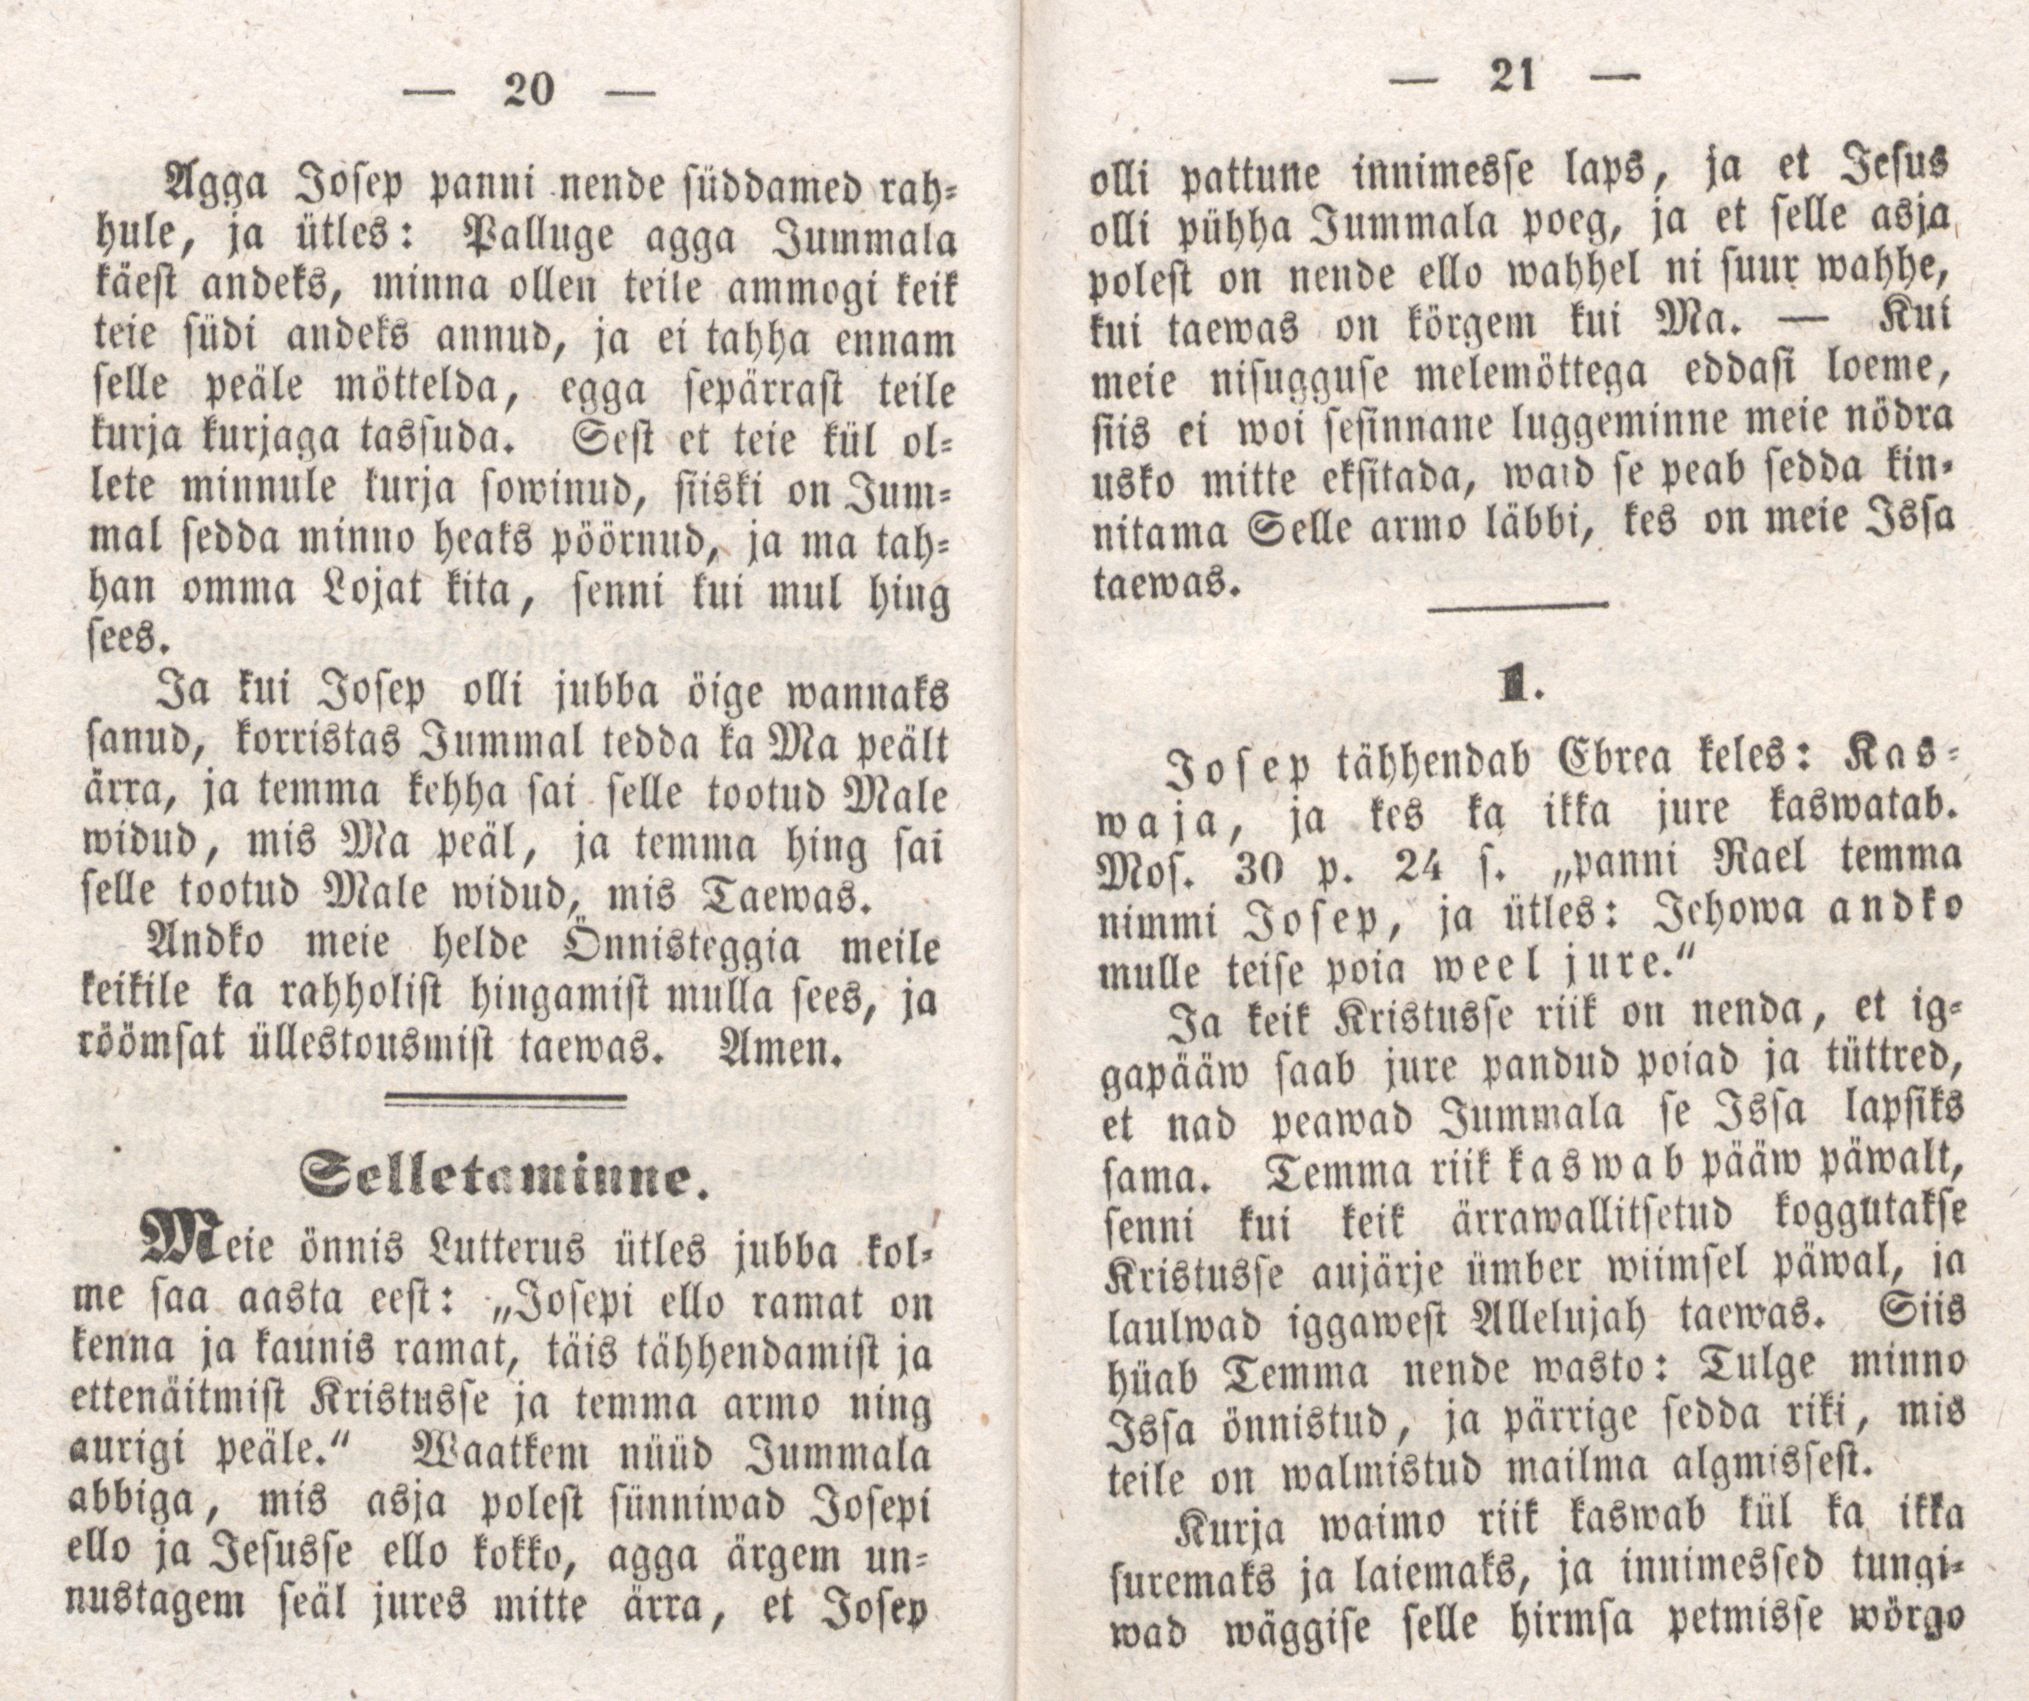 Josepi elloramat (1850) | 13. (20-21) Haupttext